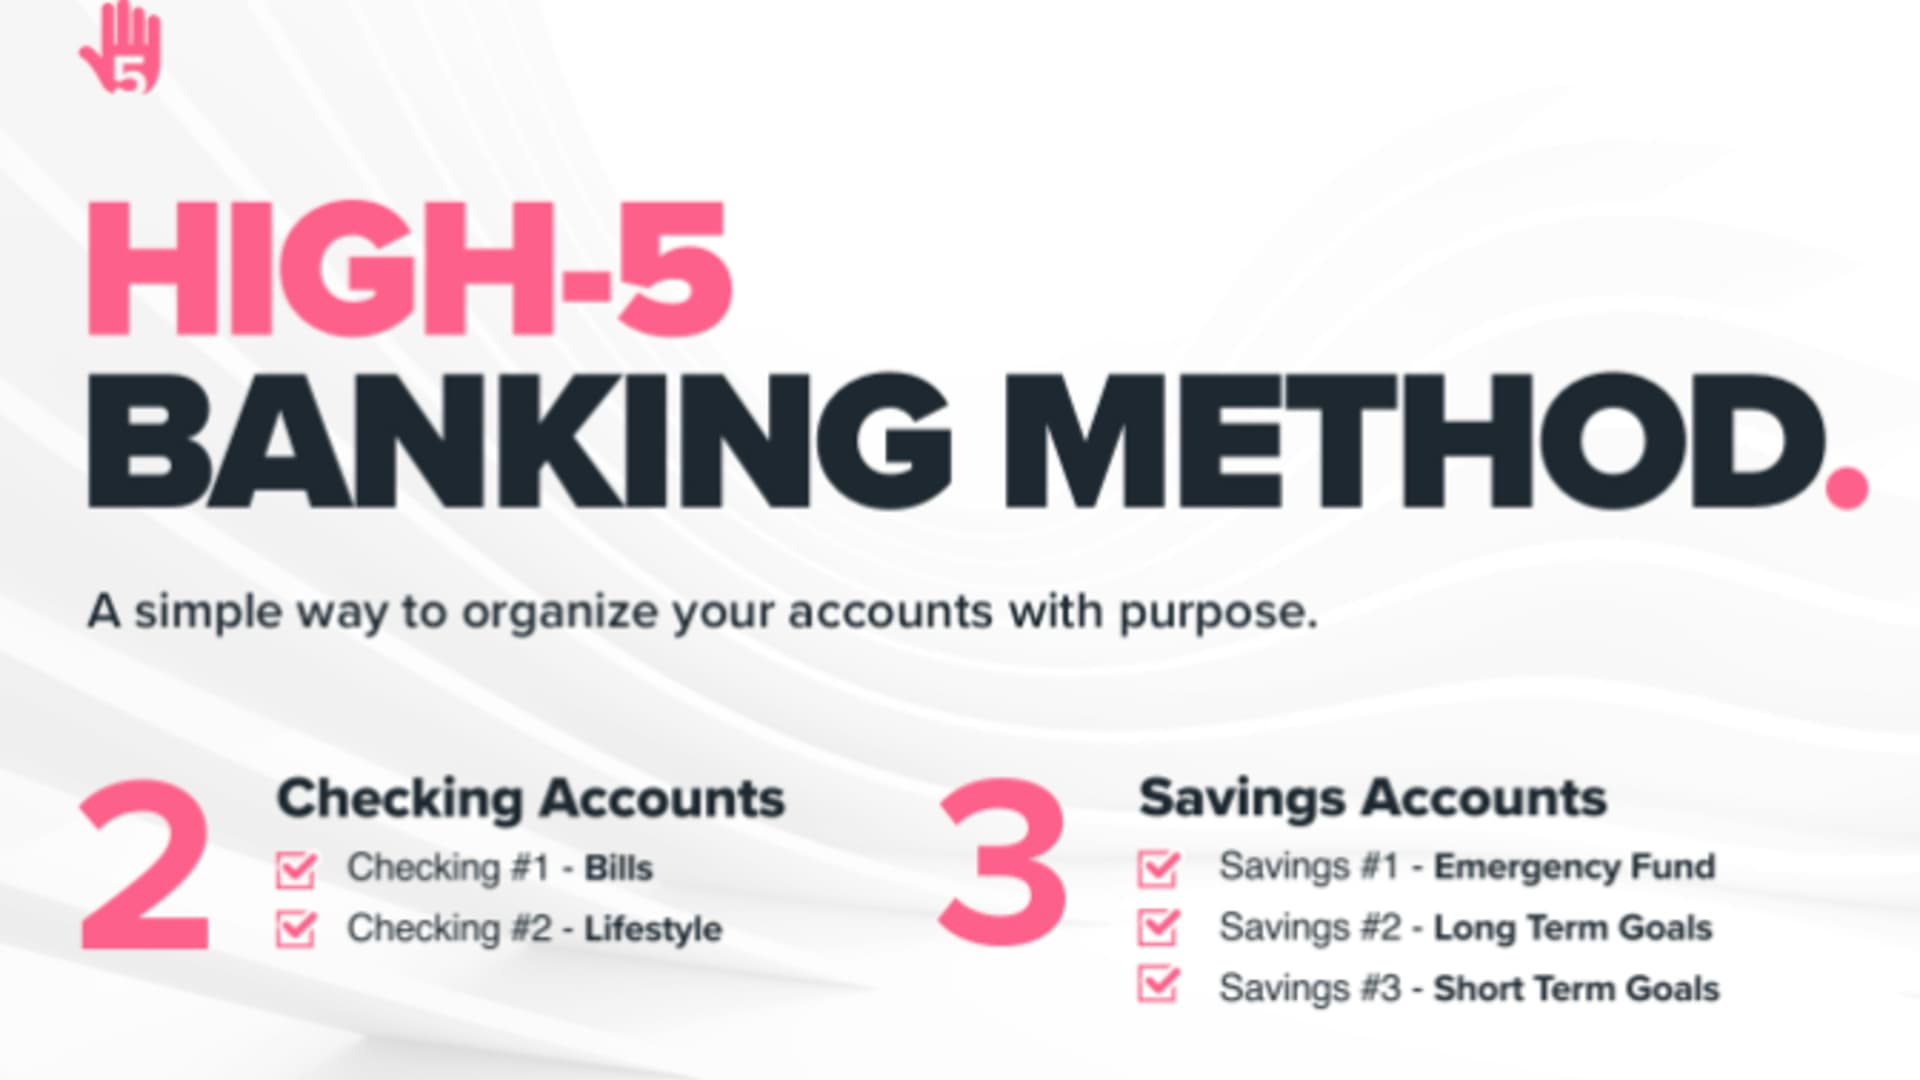 High-5 Banking Method